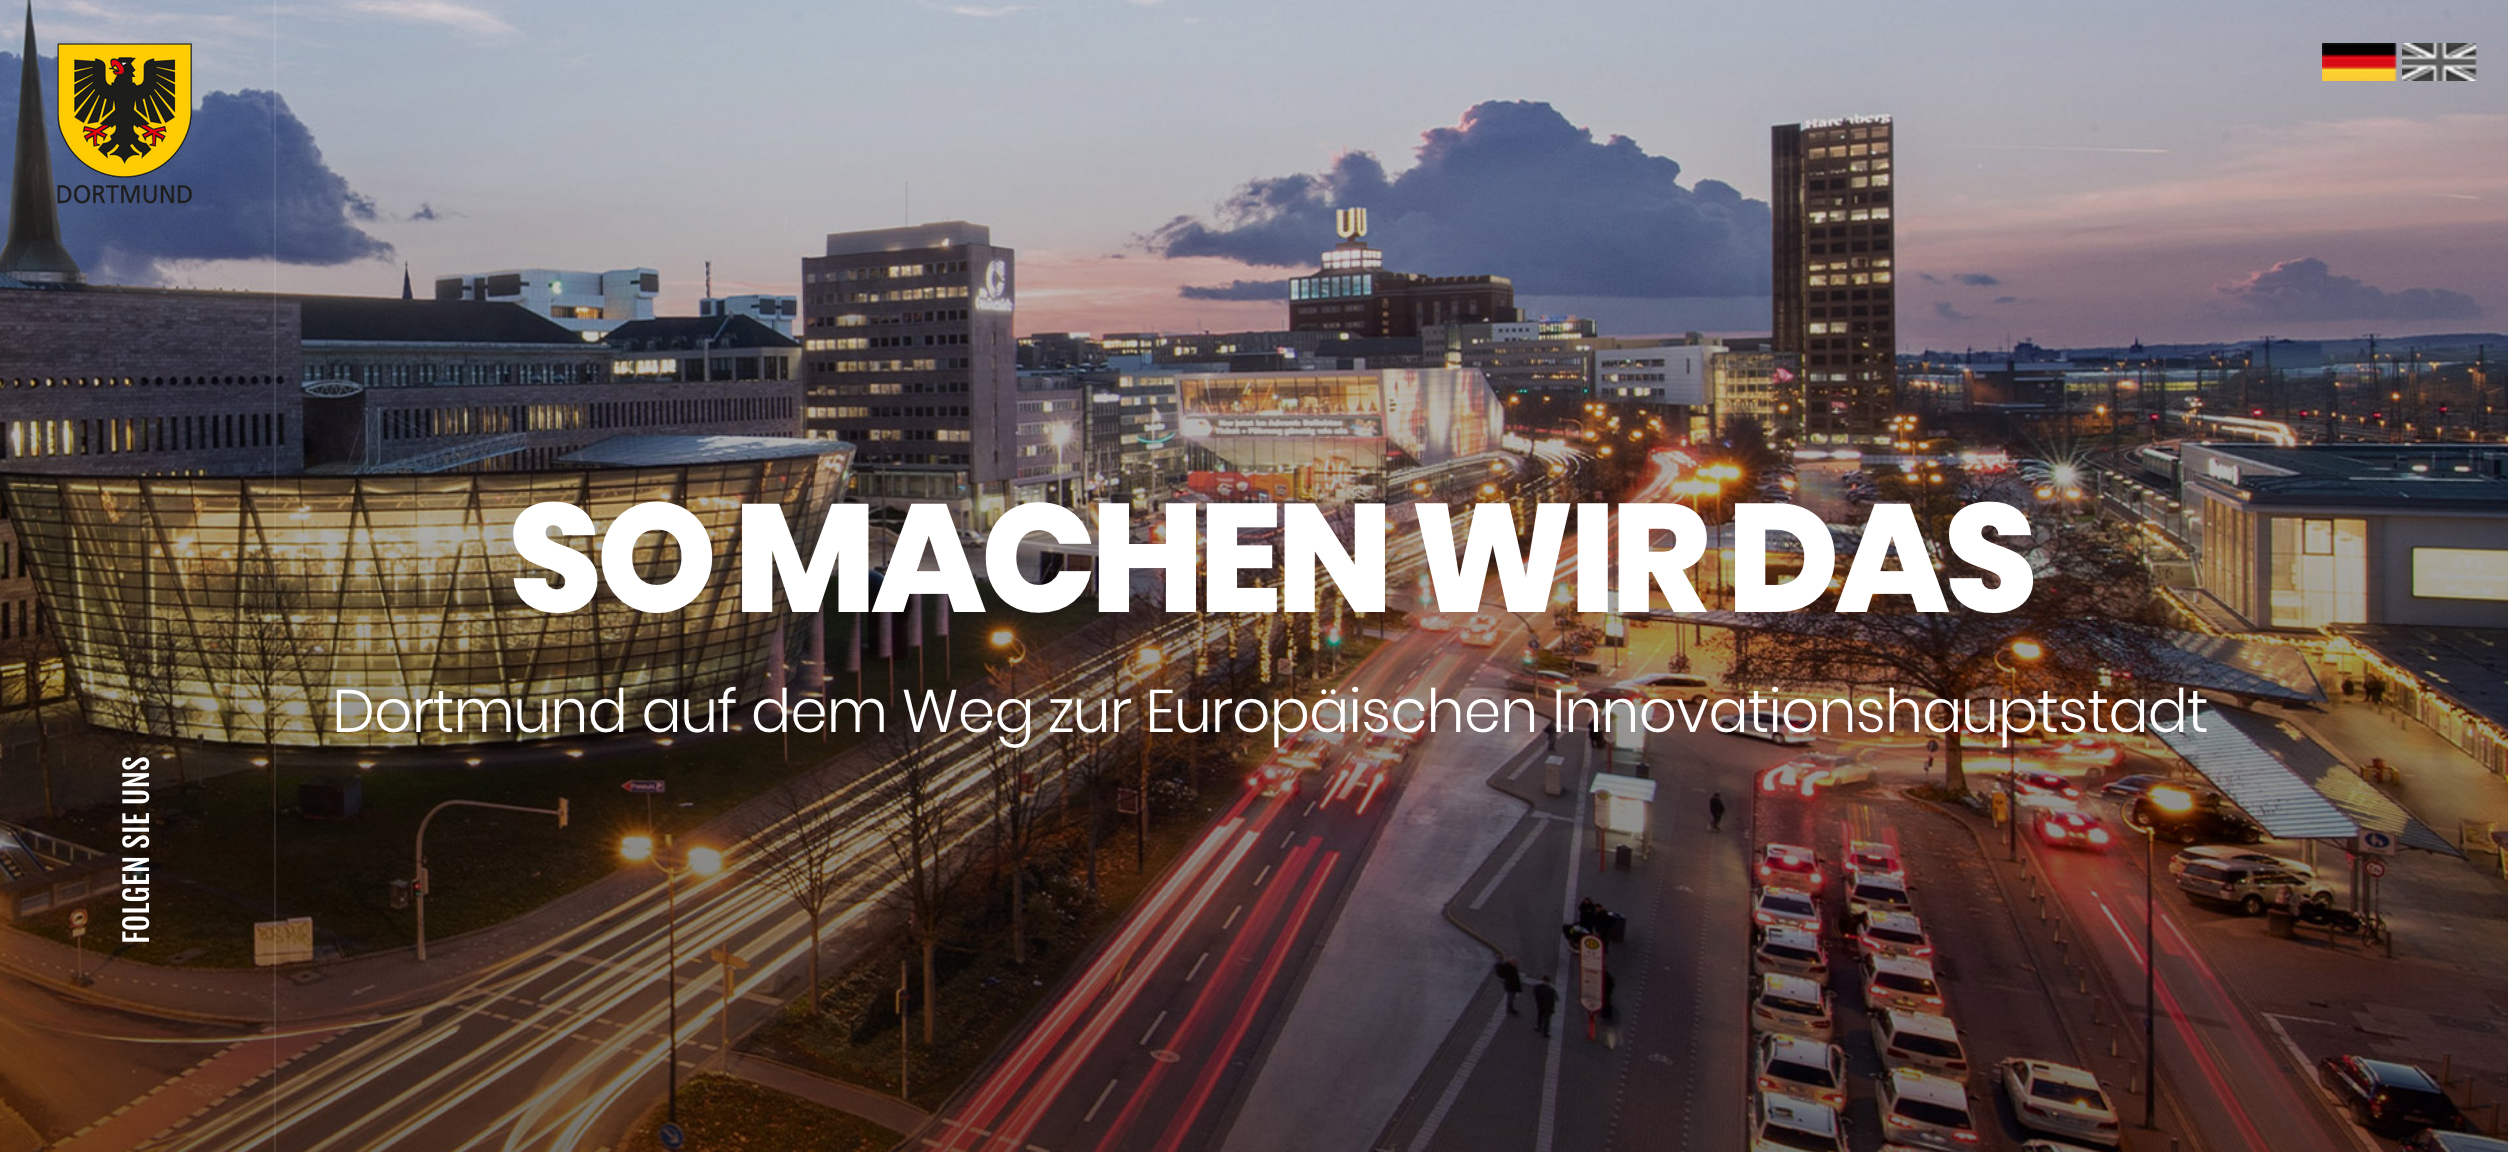 Dortmund Kandidat für Europäische Innovationshauptstadt